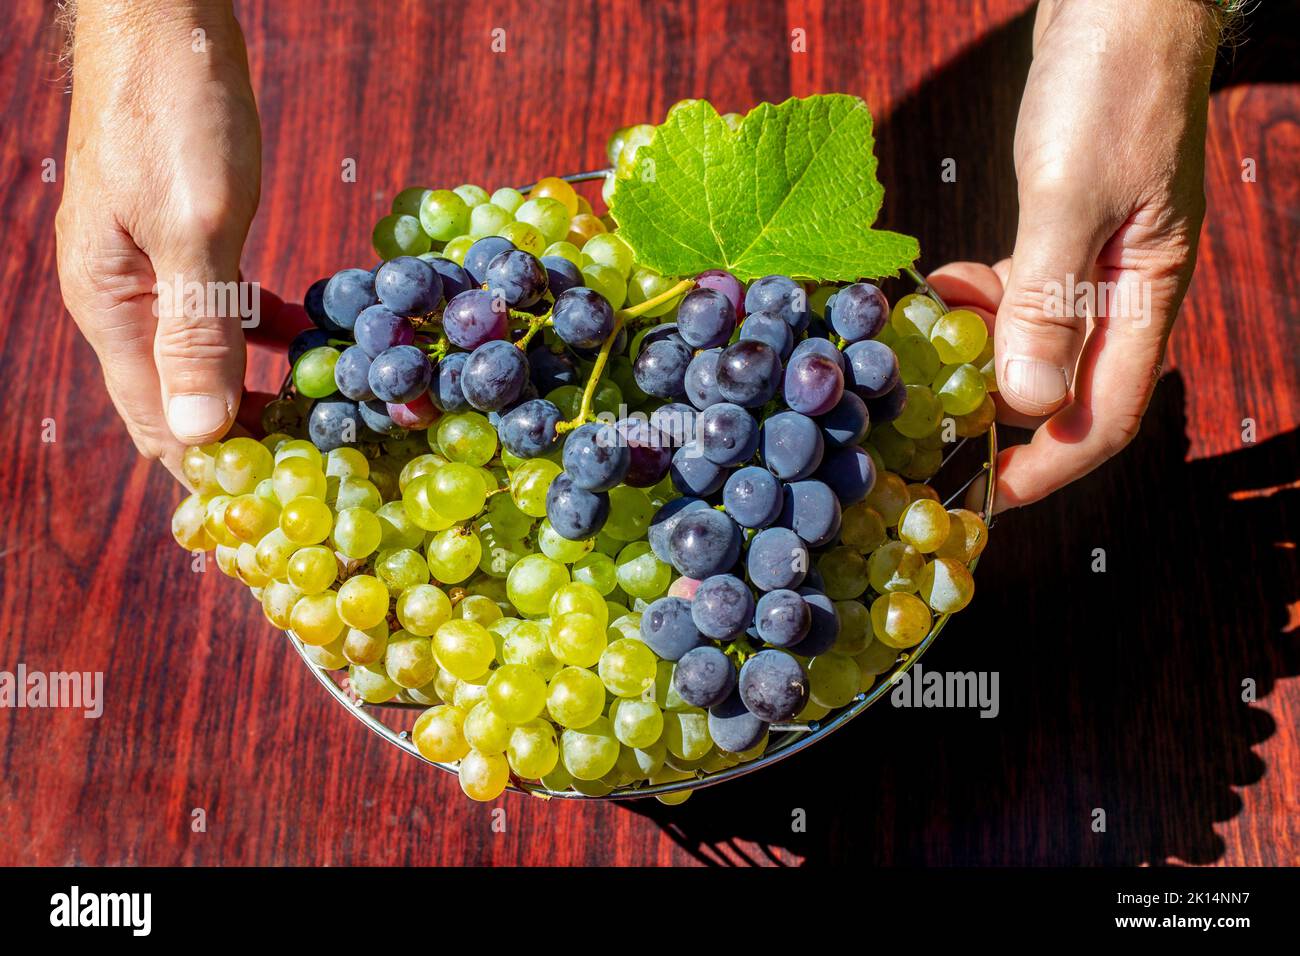 Ein Mann stellt eine Vase mit grünen und blauen Trauben auf den Tisch, Draufsicht. Obsternte im Herbst. Stockfoto